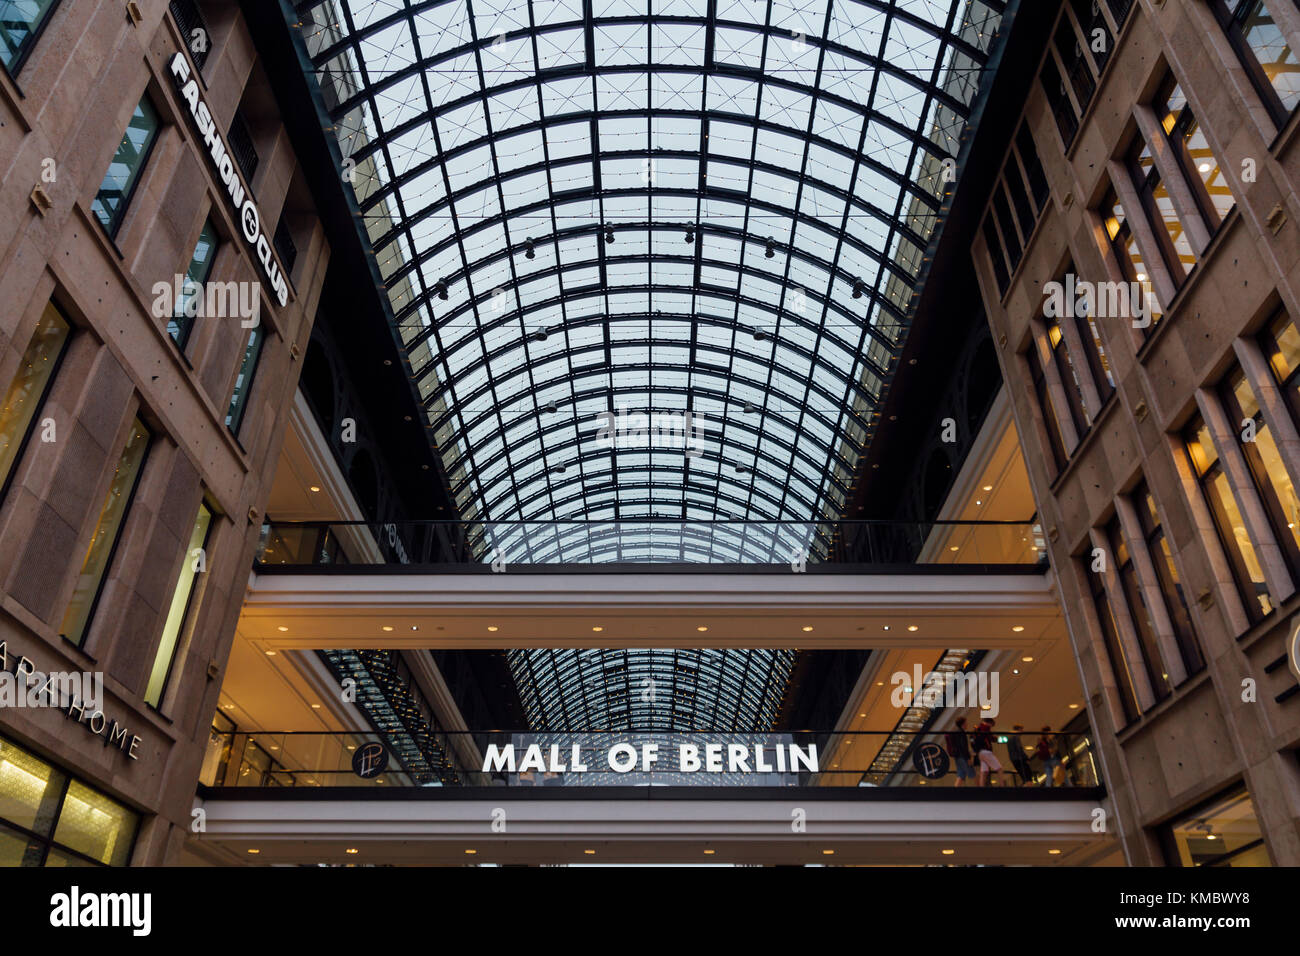 BERLIN, DEUTSCHLAND - 16. MAI 2017: Die Mall von Berlin Einkaufszentrum am Leipziger Platz, mit verschiedenen Einkaufsmöglichkeiten auf vier Etagen Stockfoto